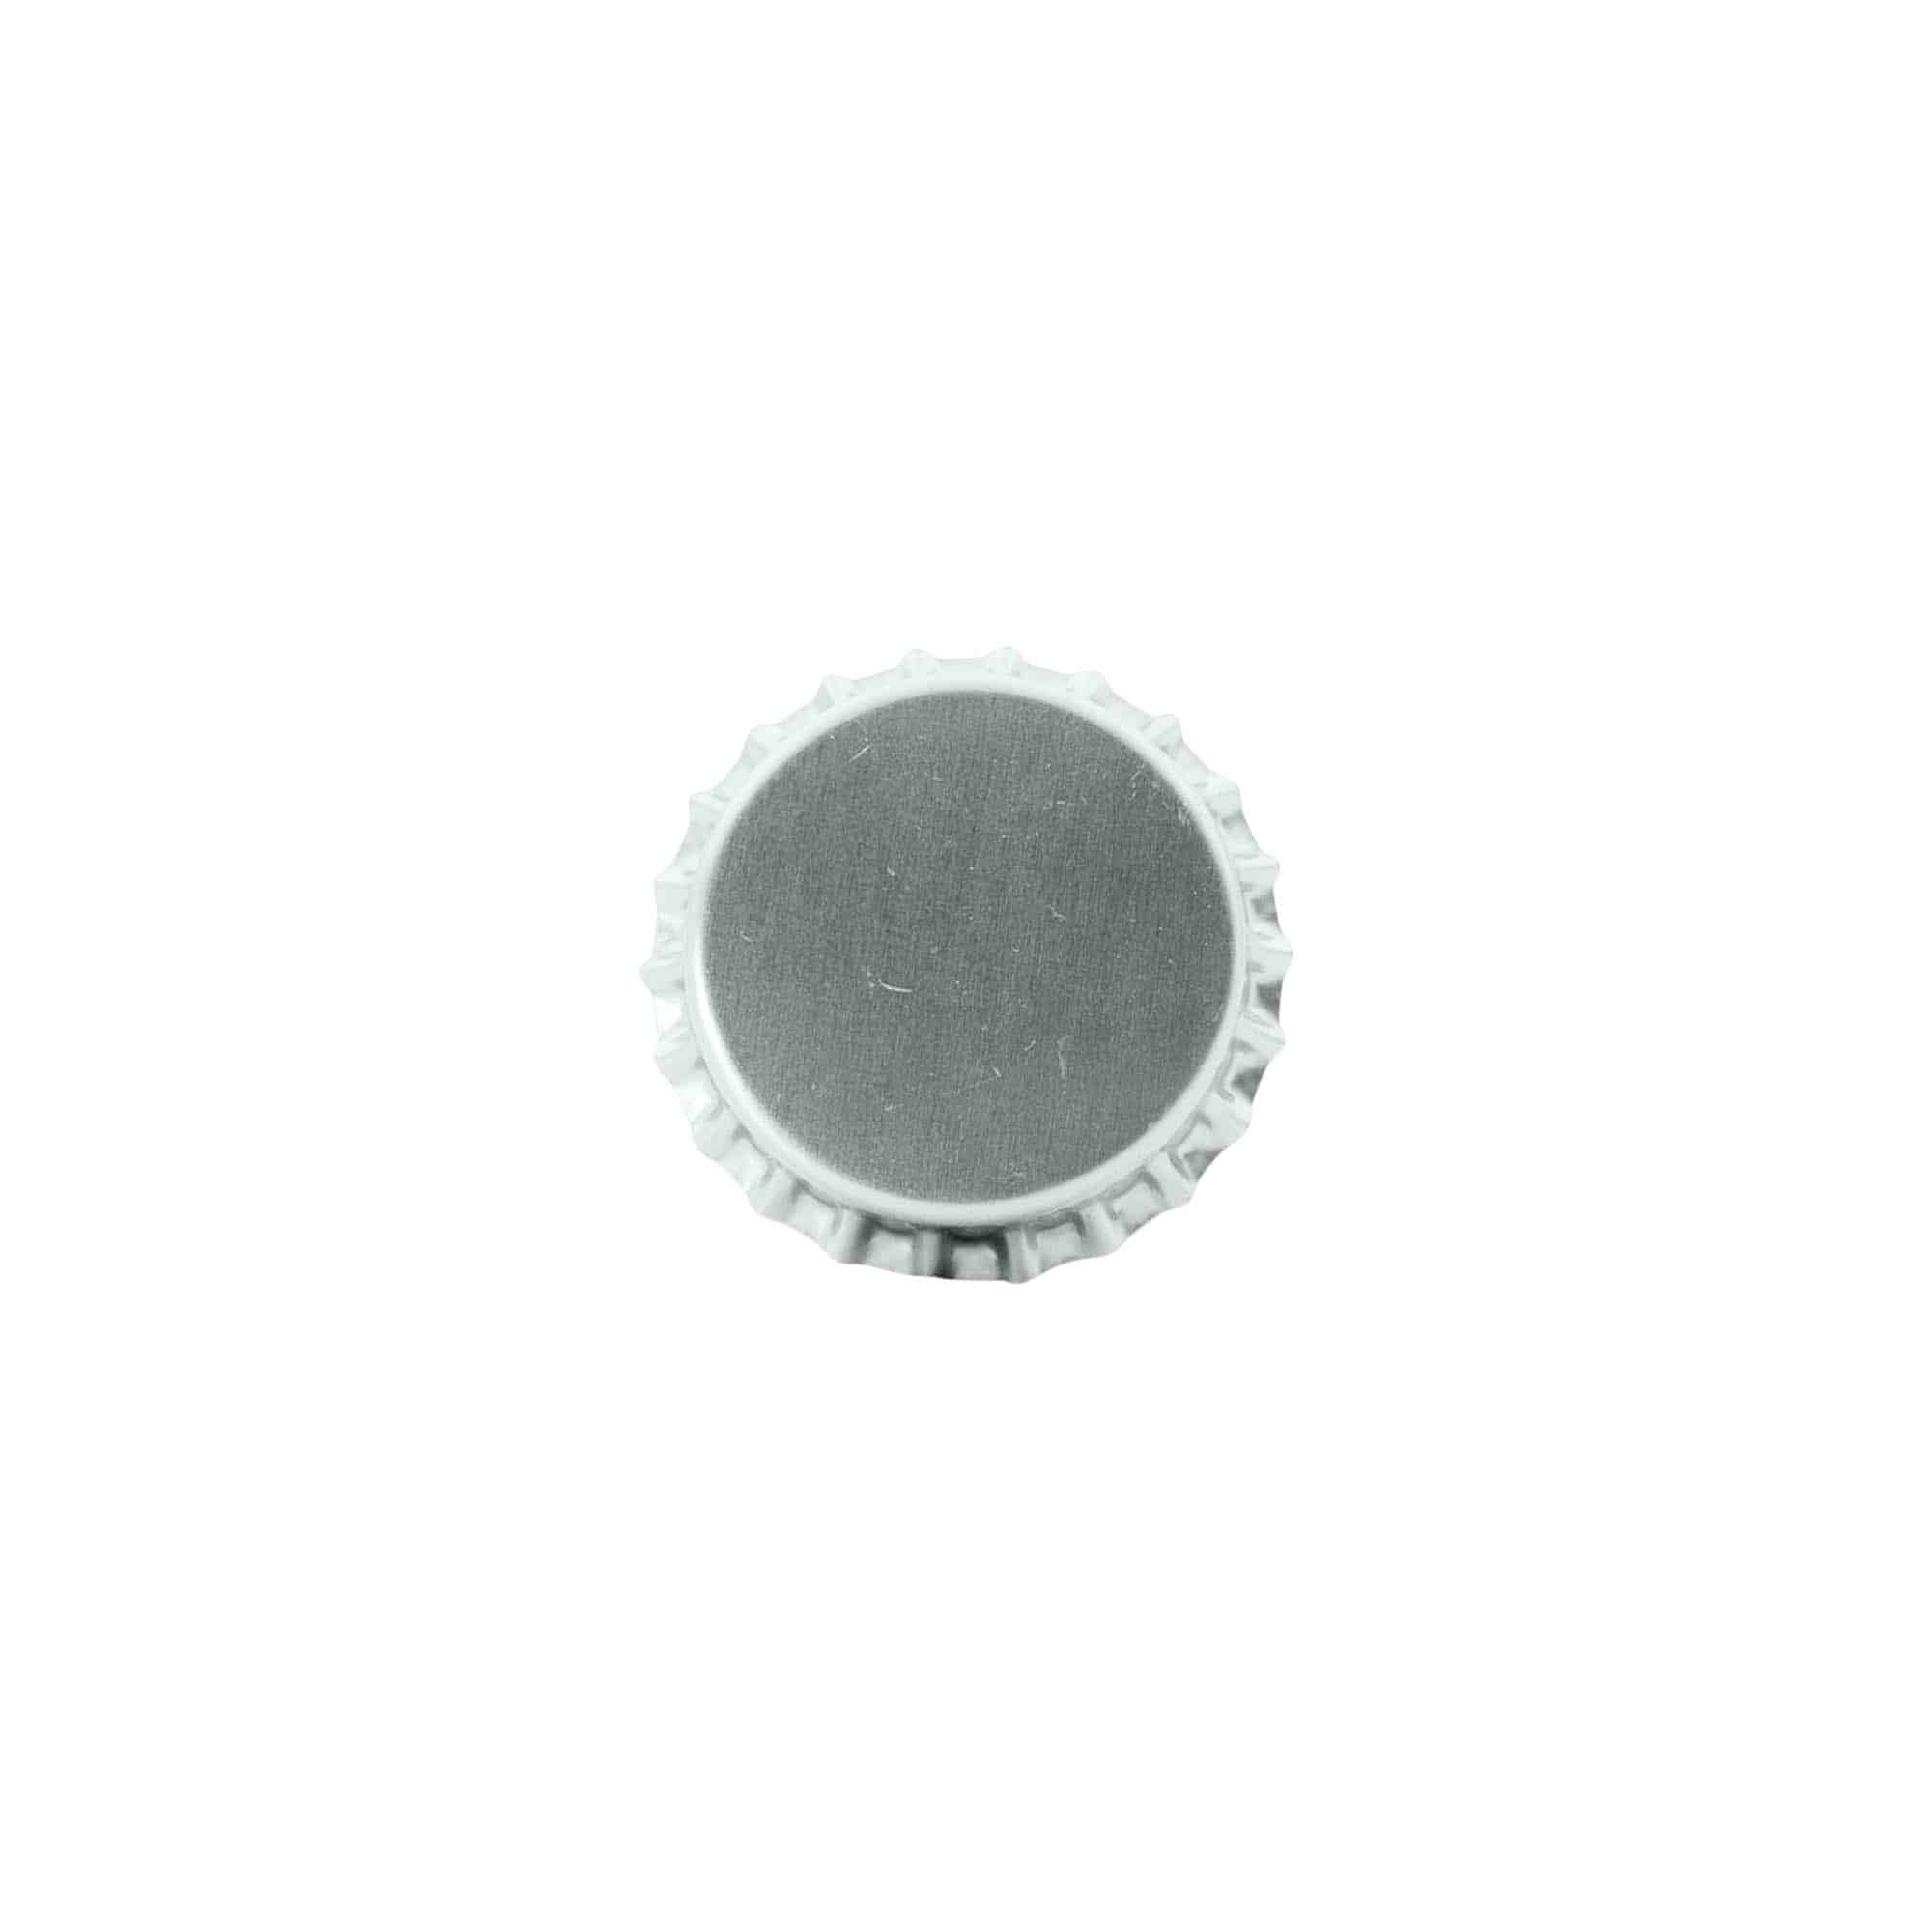 Kronekapsel 29 mm, metal, sølv